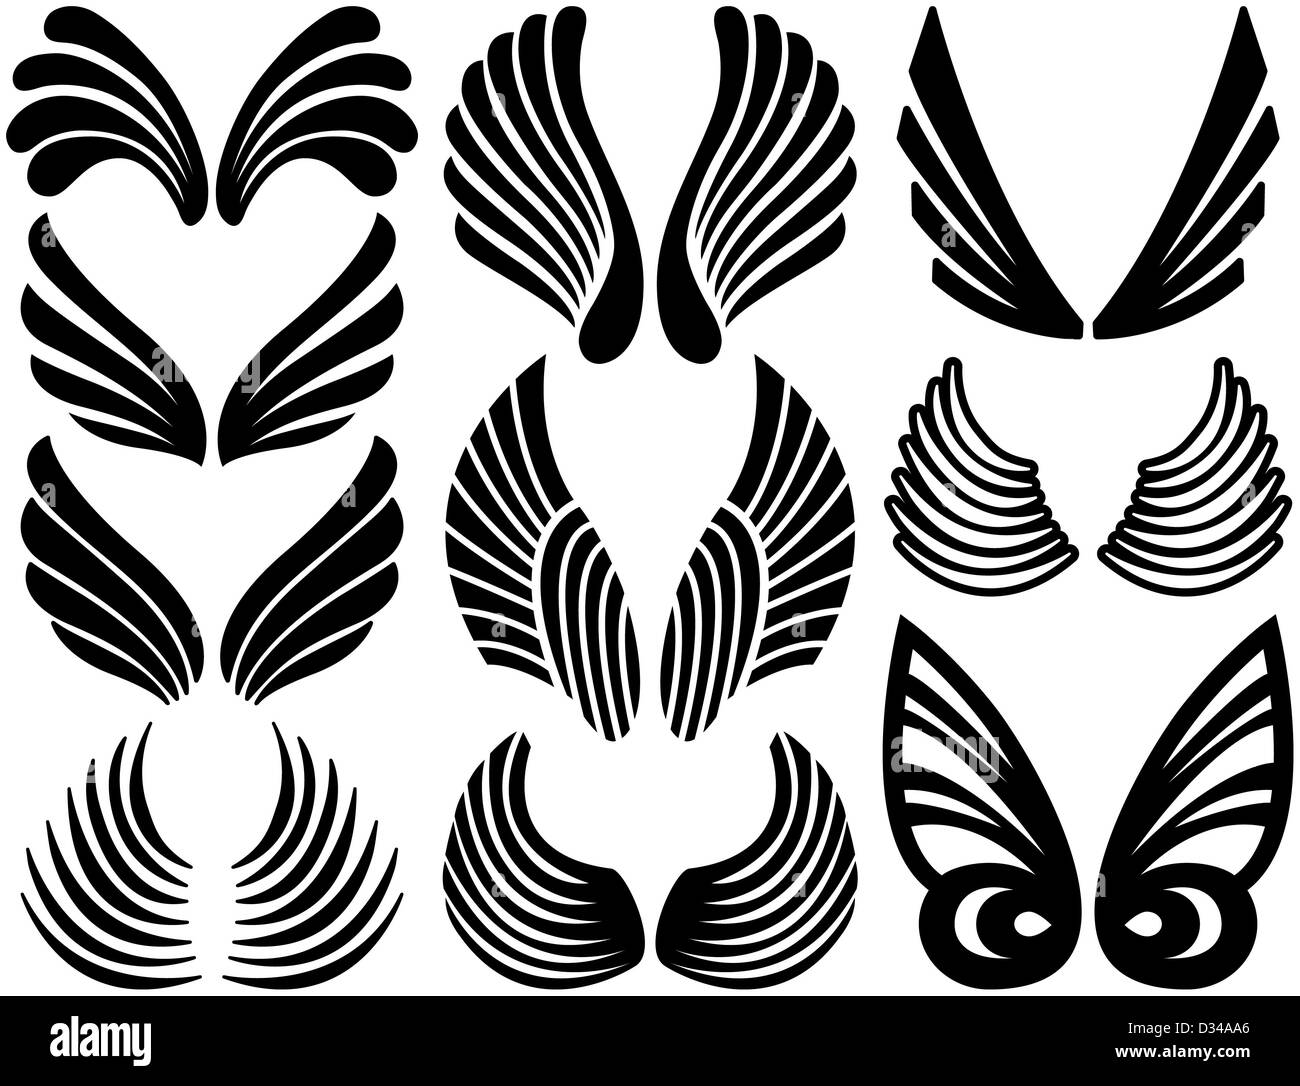 Ten Sets of Black Stylized Angel Wings Stock Photo